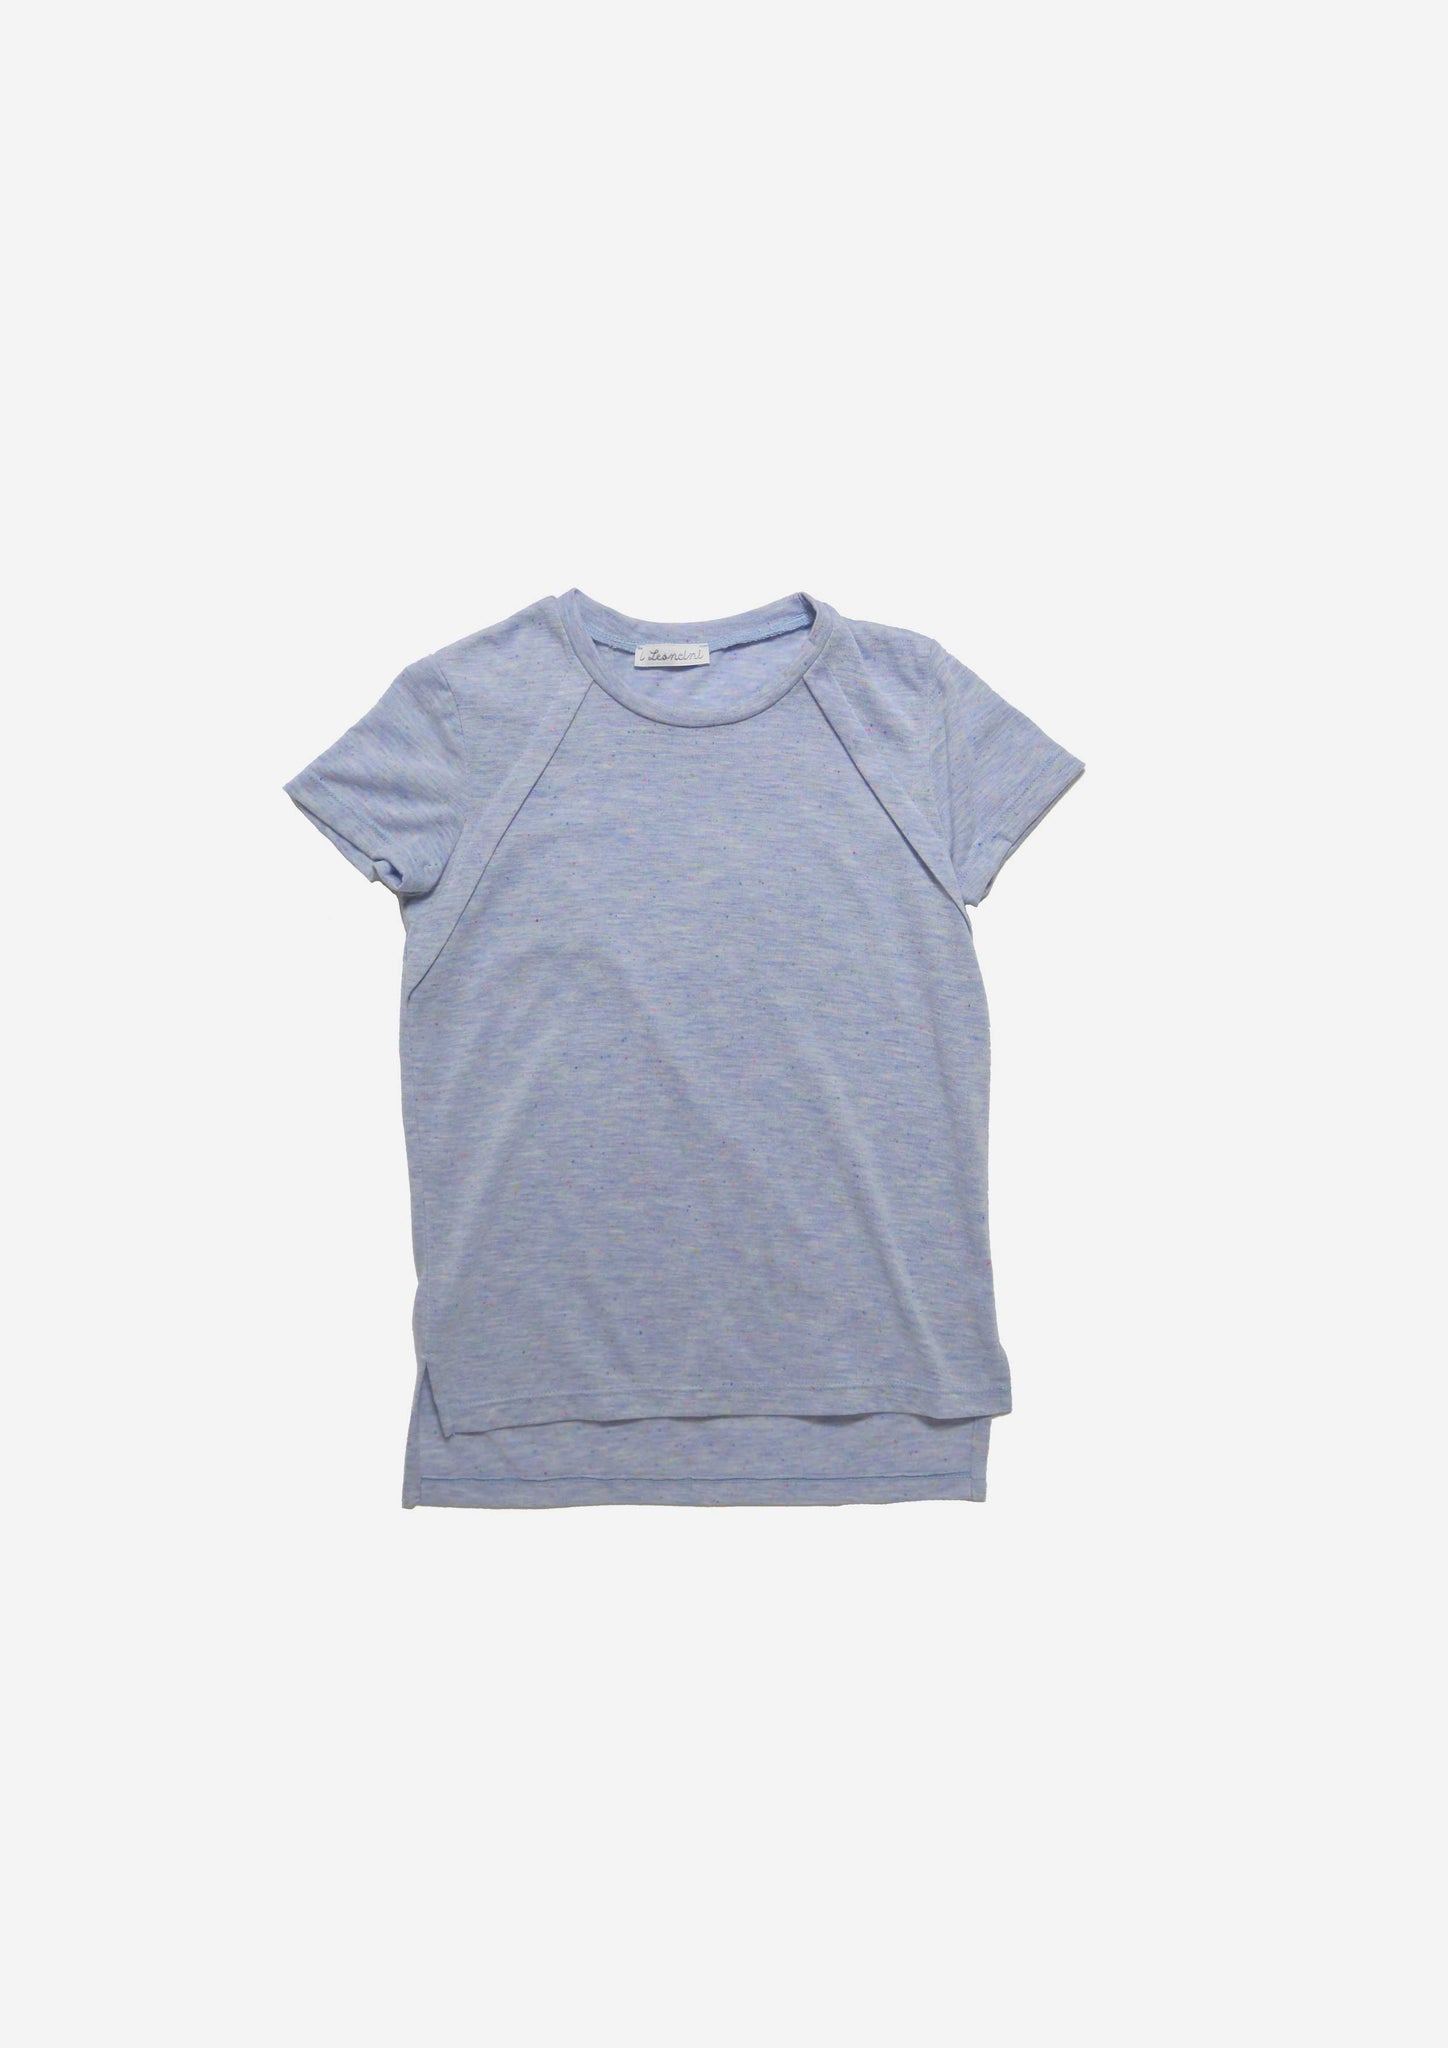 T-shirt ALEX-OUTLET T-shirt, Camicie, Top e Canotte-I Leoncini Shop